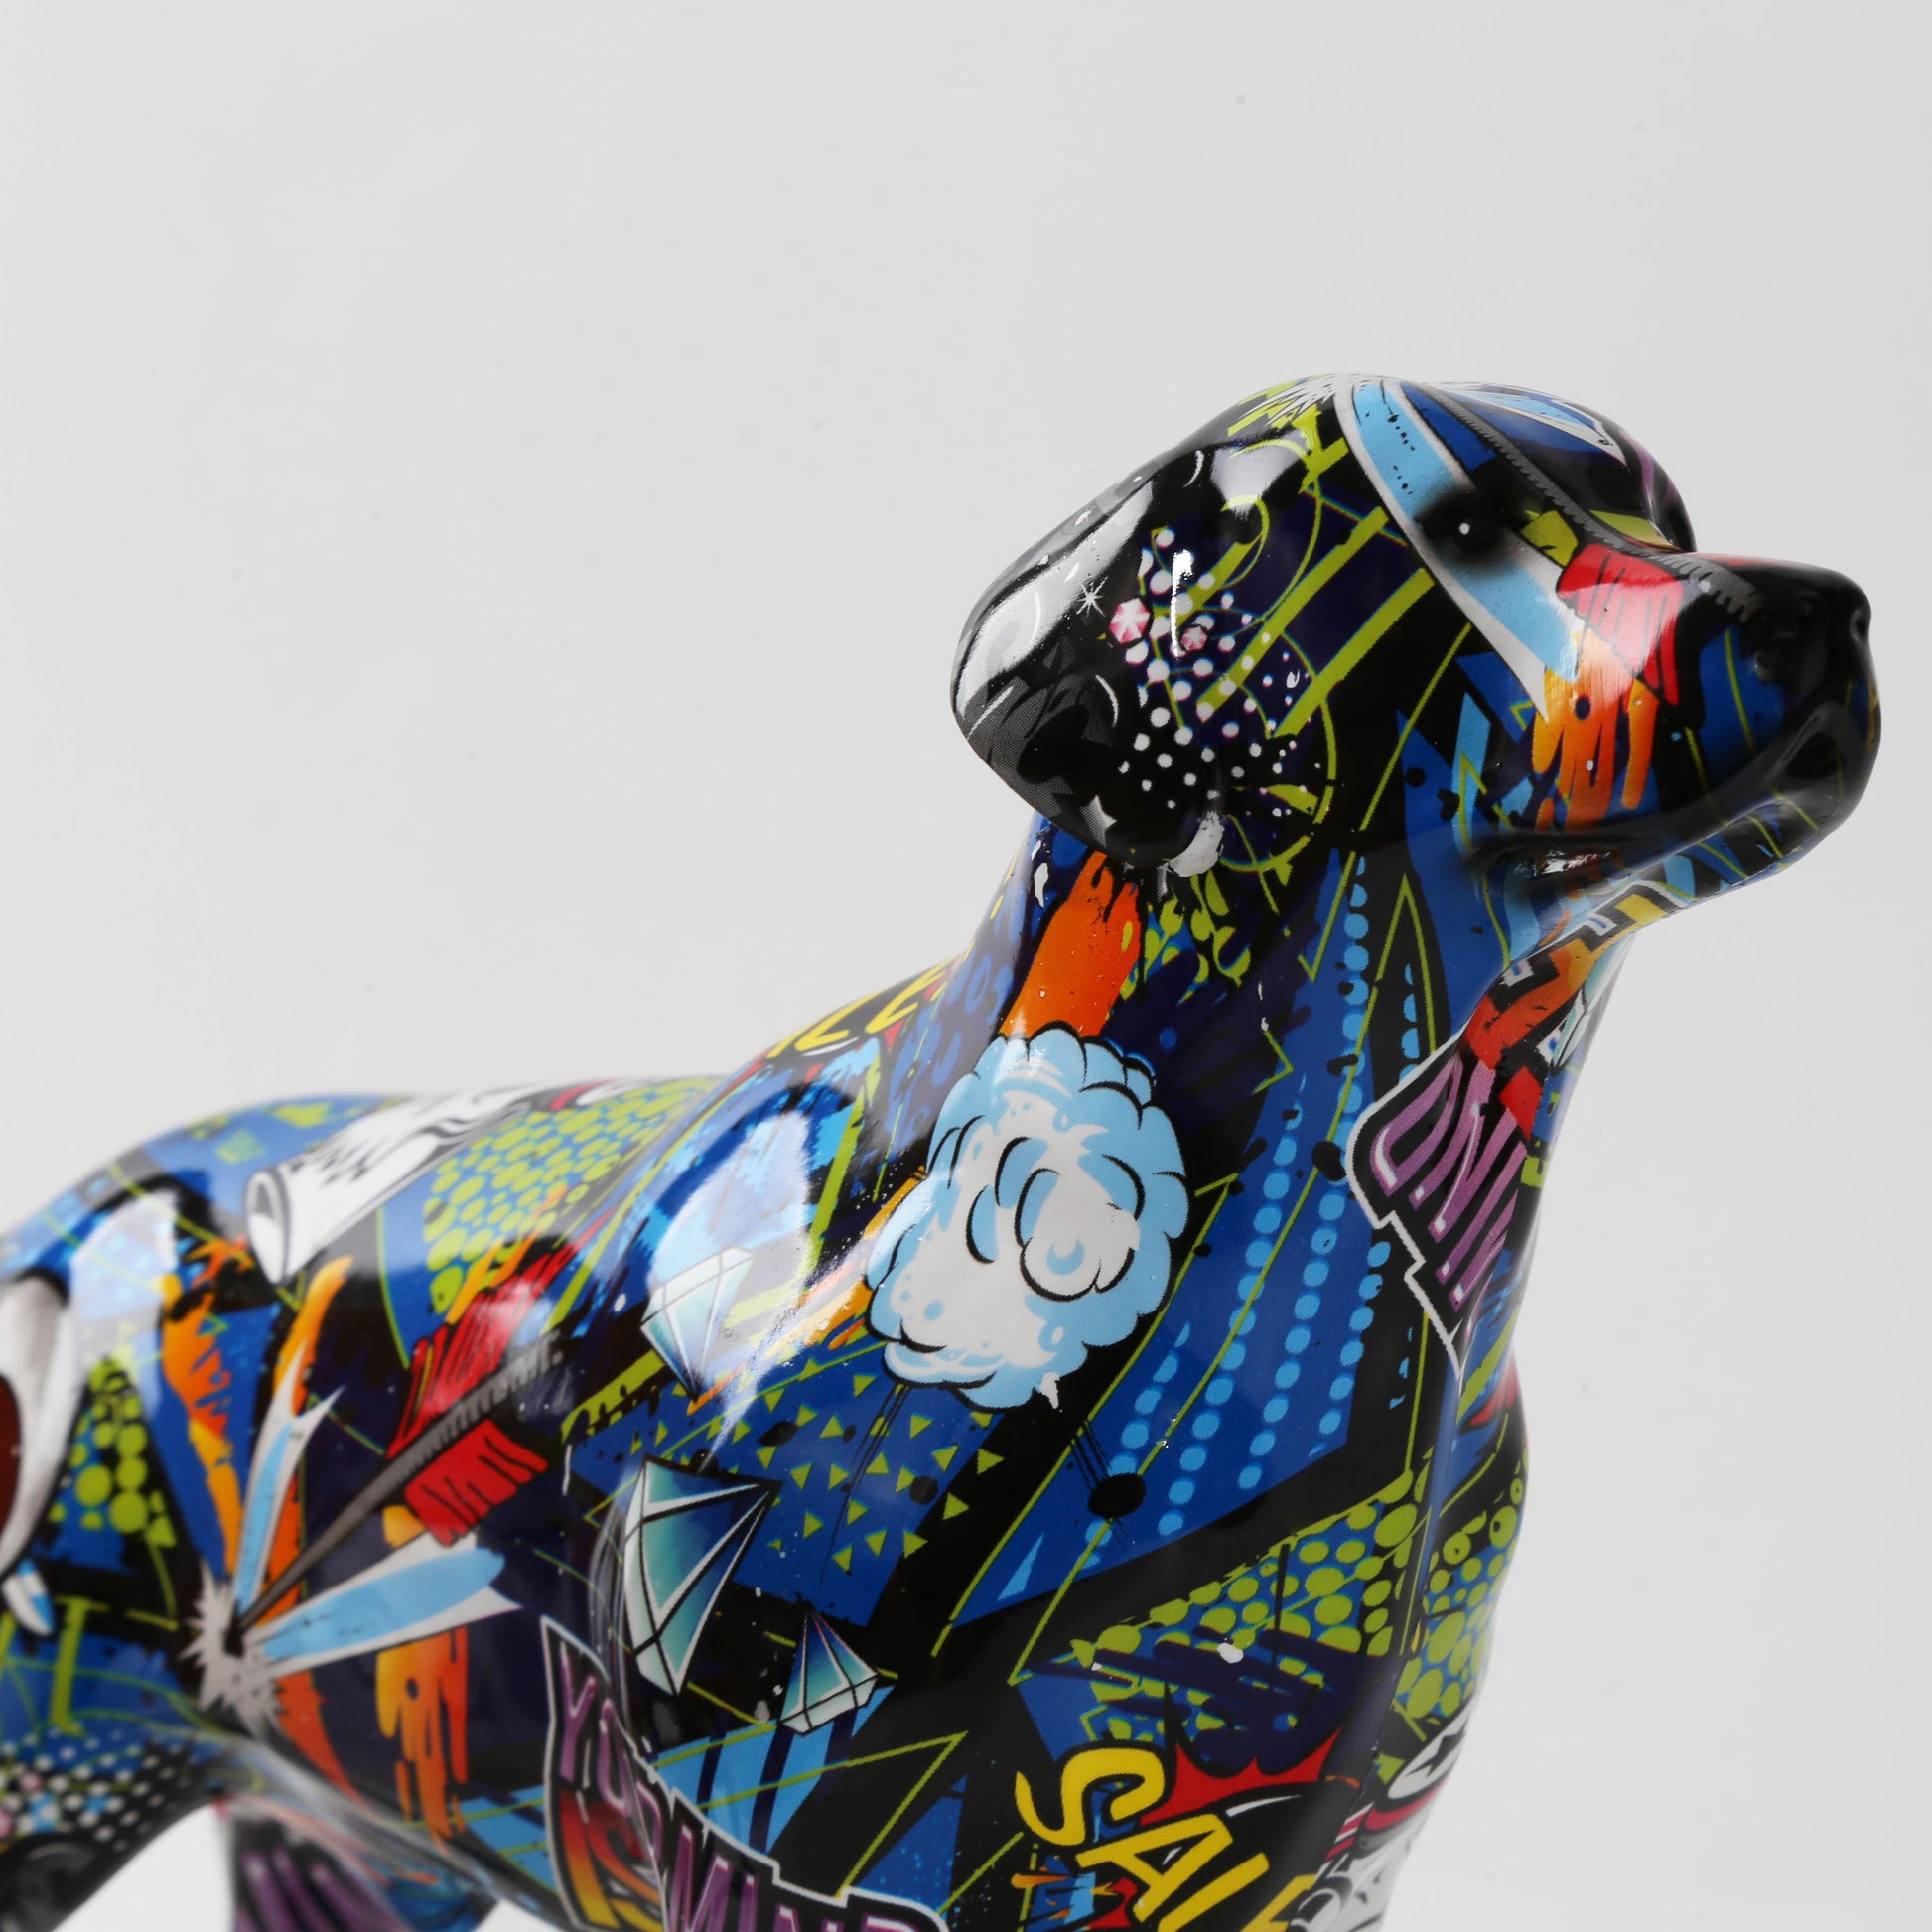 CORX Designs - Graffiti Labrador Resin Statue - Review